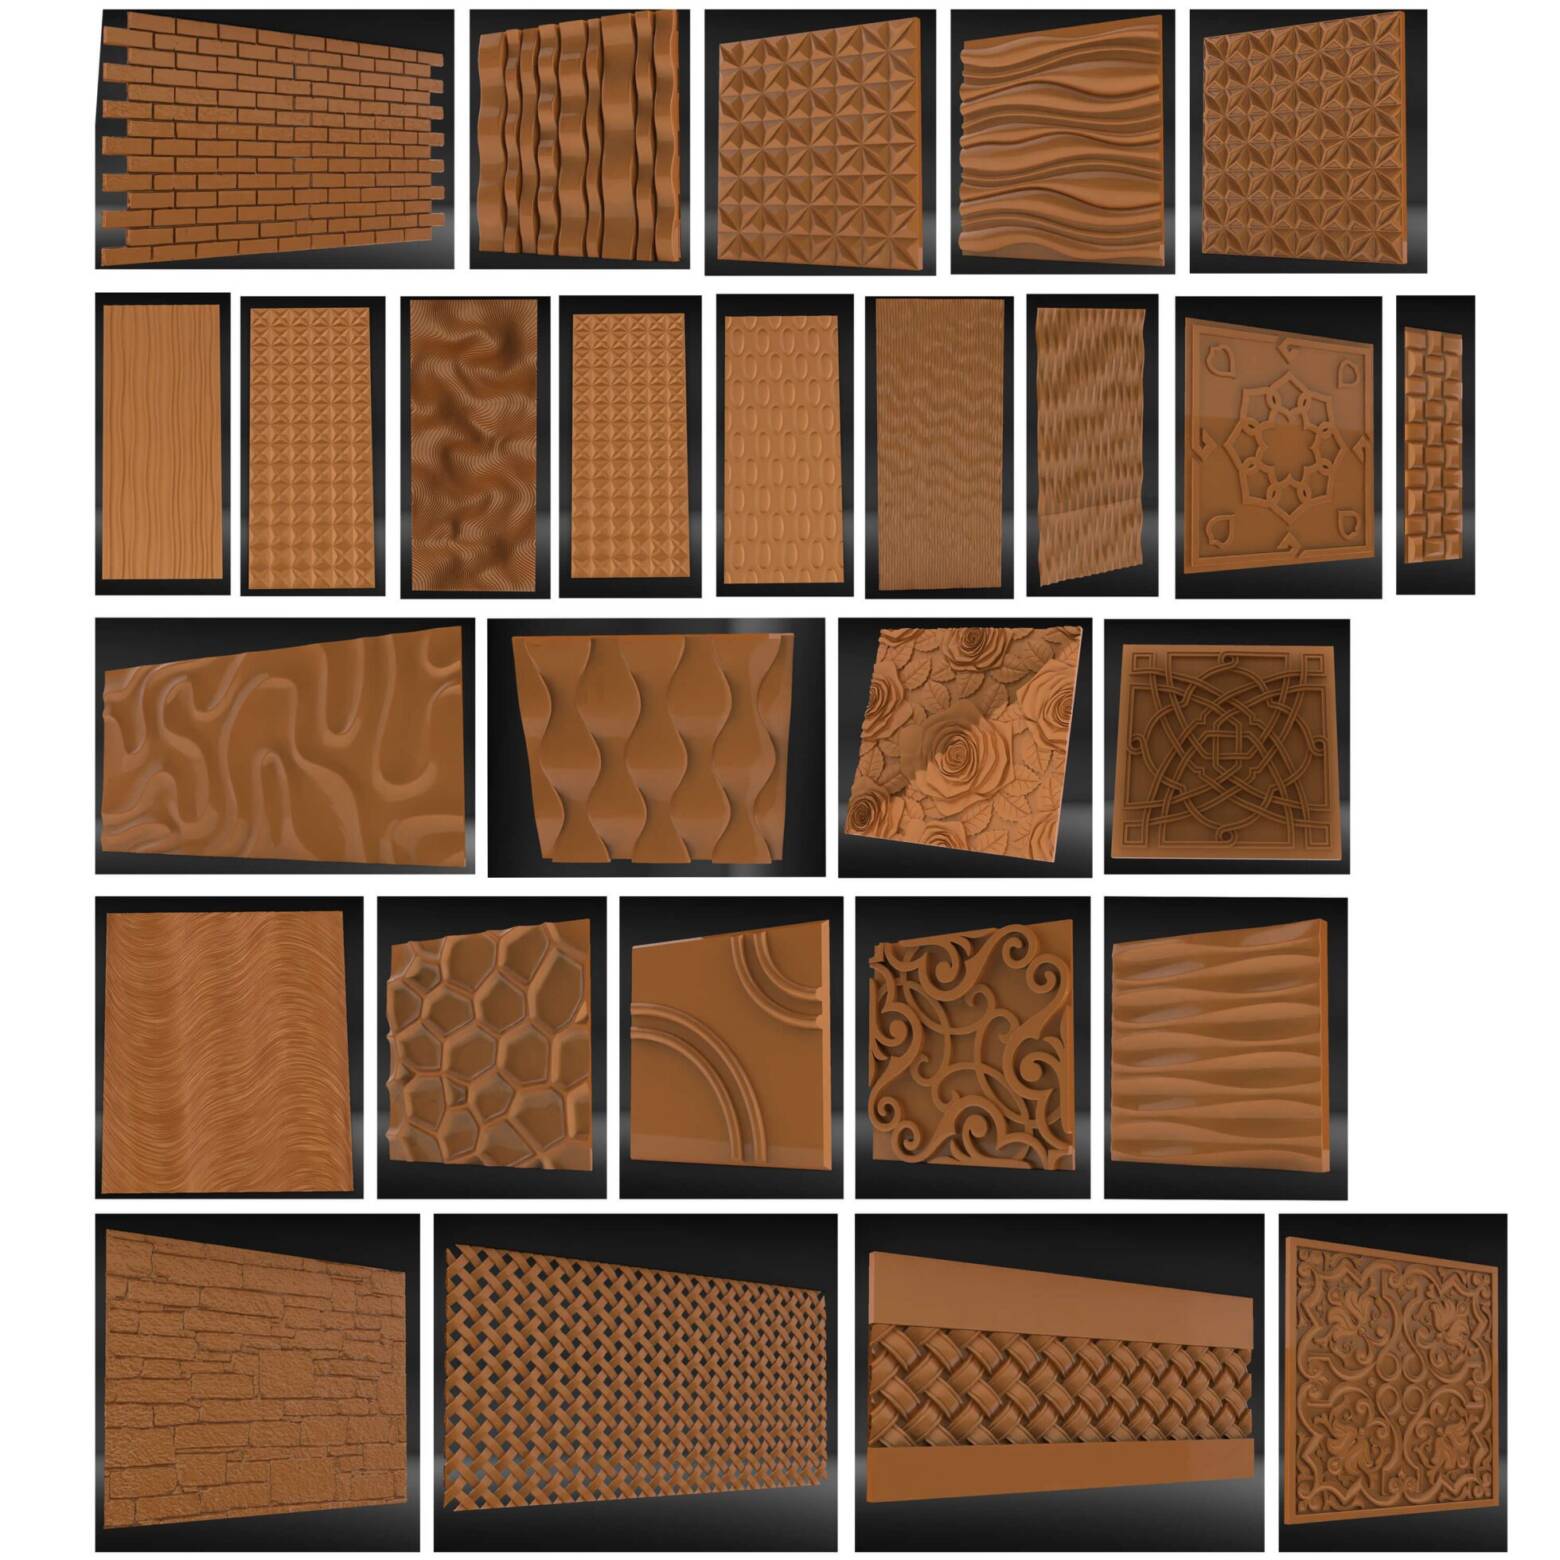 27 pcs fichiers stl 3d modèles briques panneaux textures pour cnc routeur imprimante 3d graveur carving.jpg